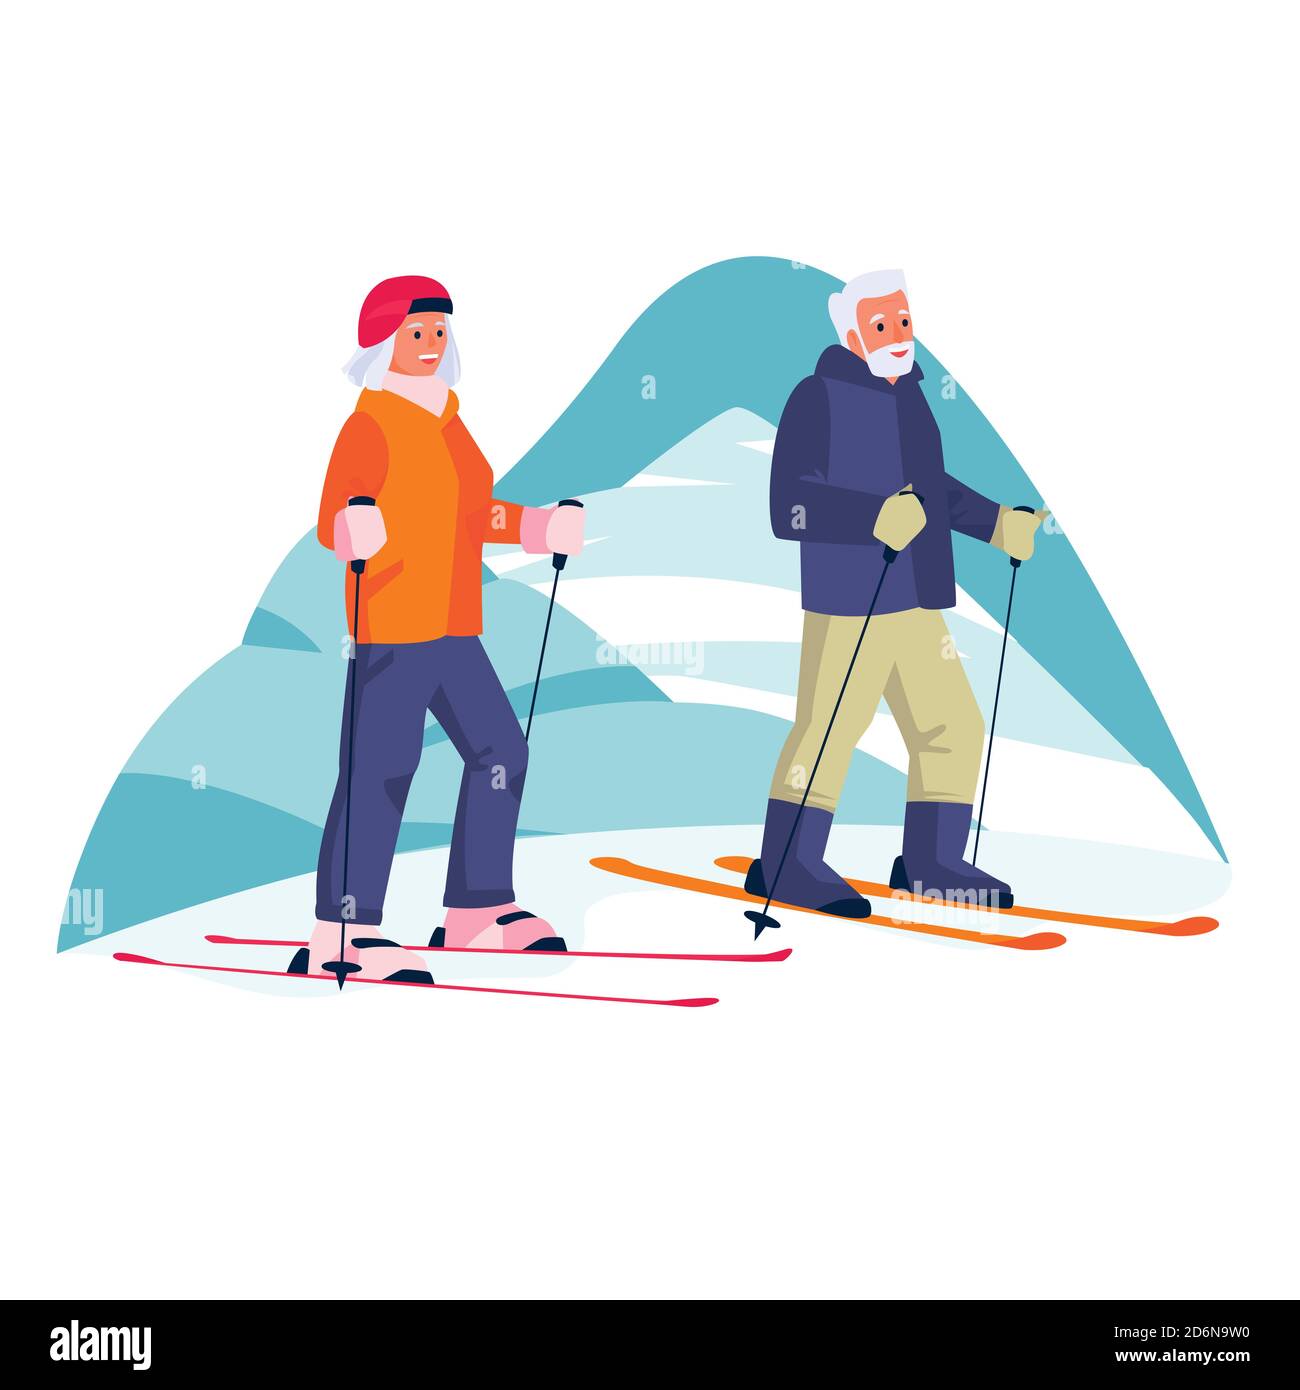 Coppie anziane che sciano in montagna. Vector cartoon piatto illustrazione del tempo libero invernale all'aperto. Concetto di uno stile di vita sano e attivo degli anziani. Illustrazione Vettoriale